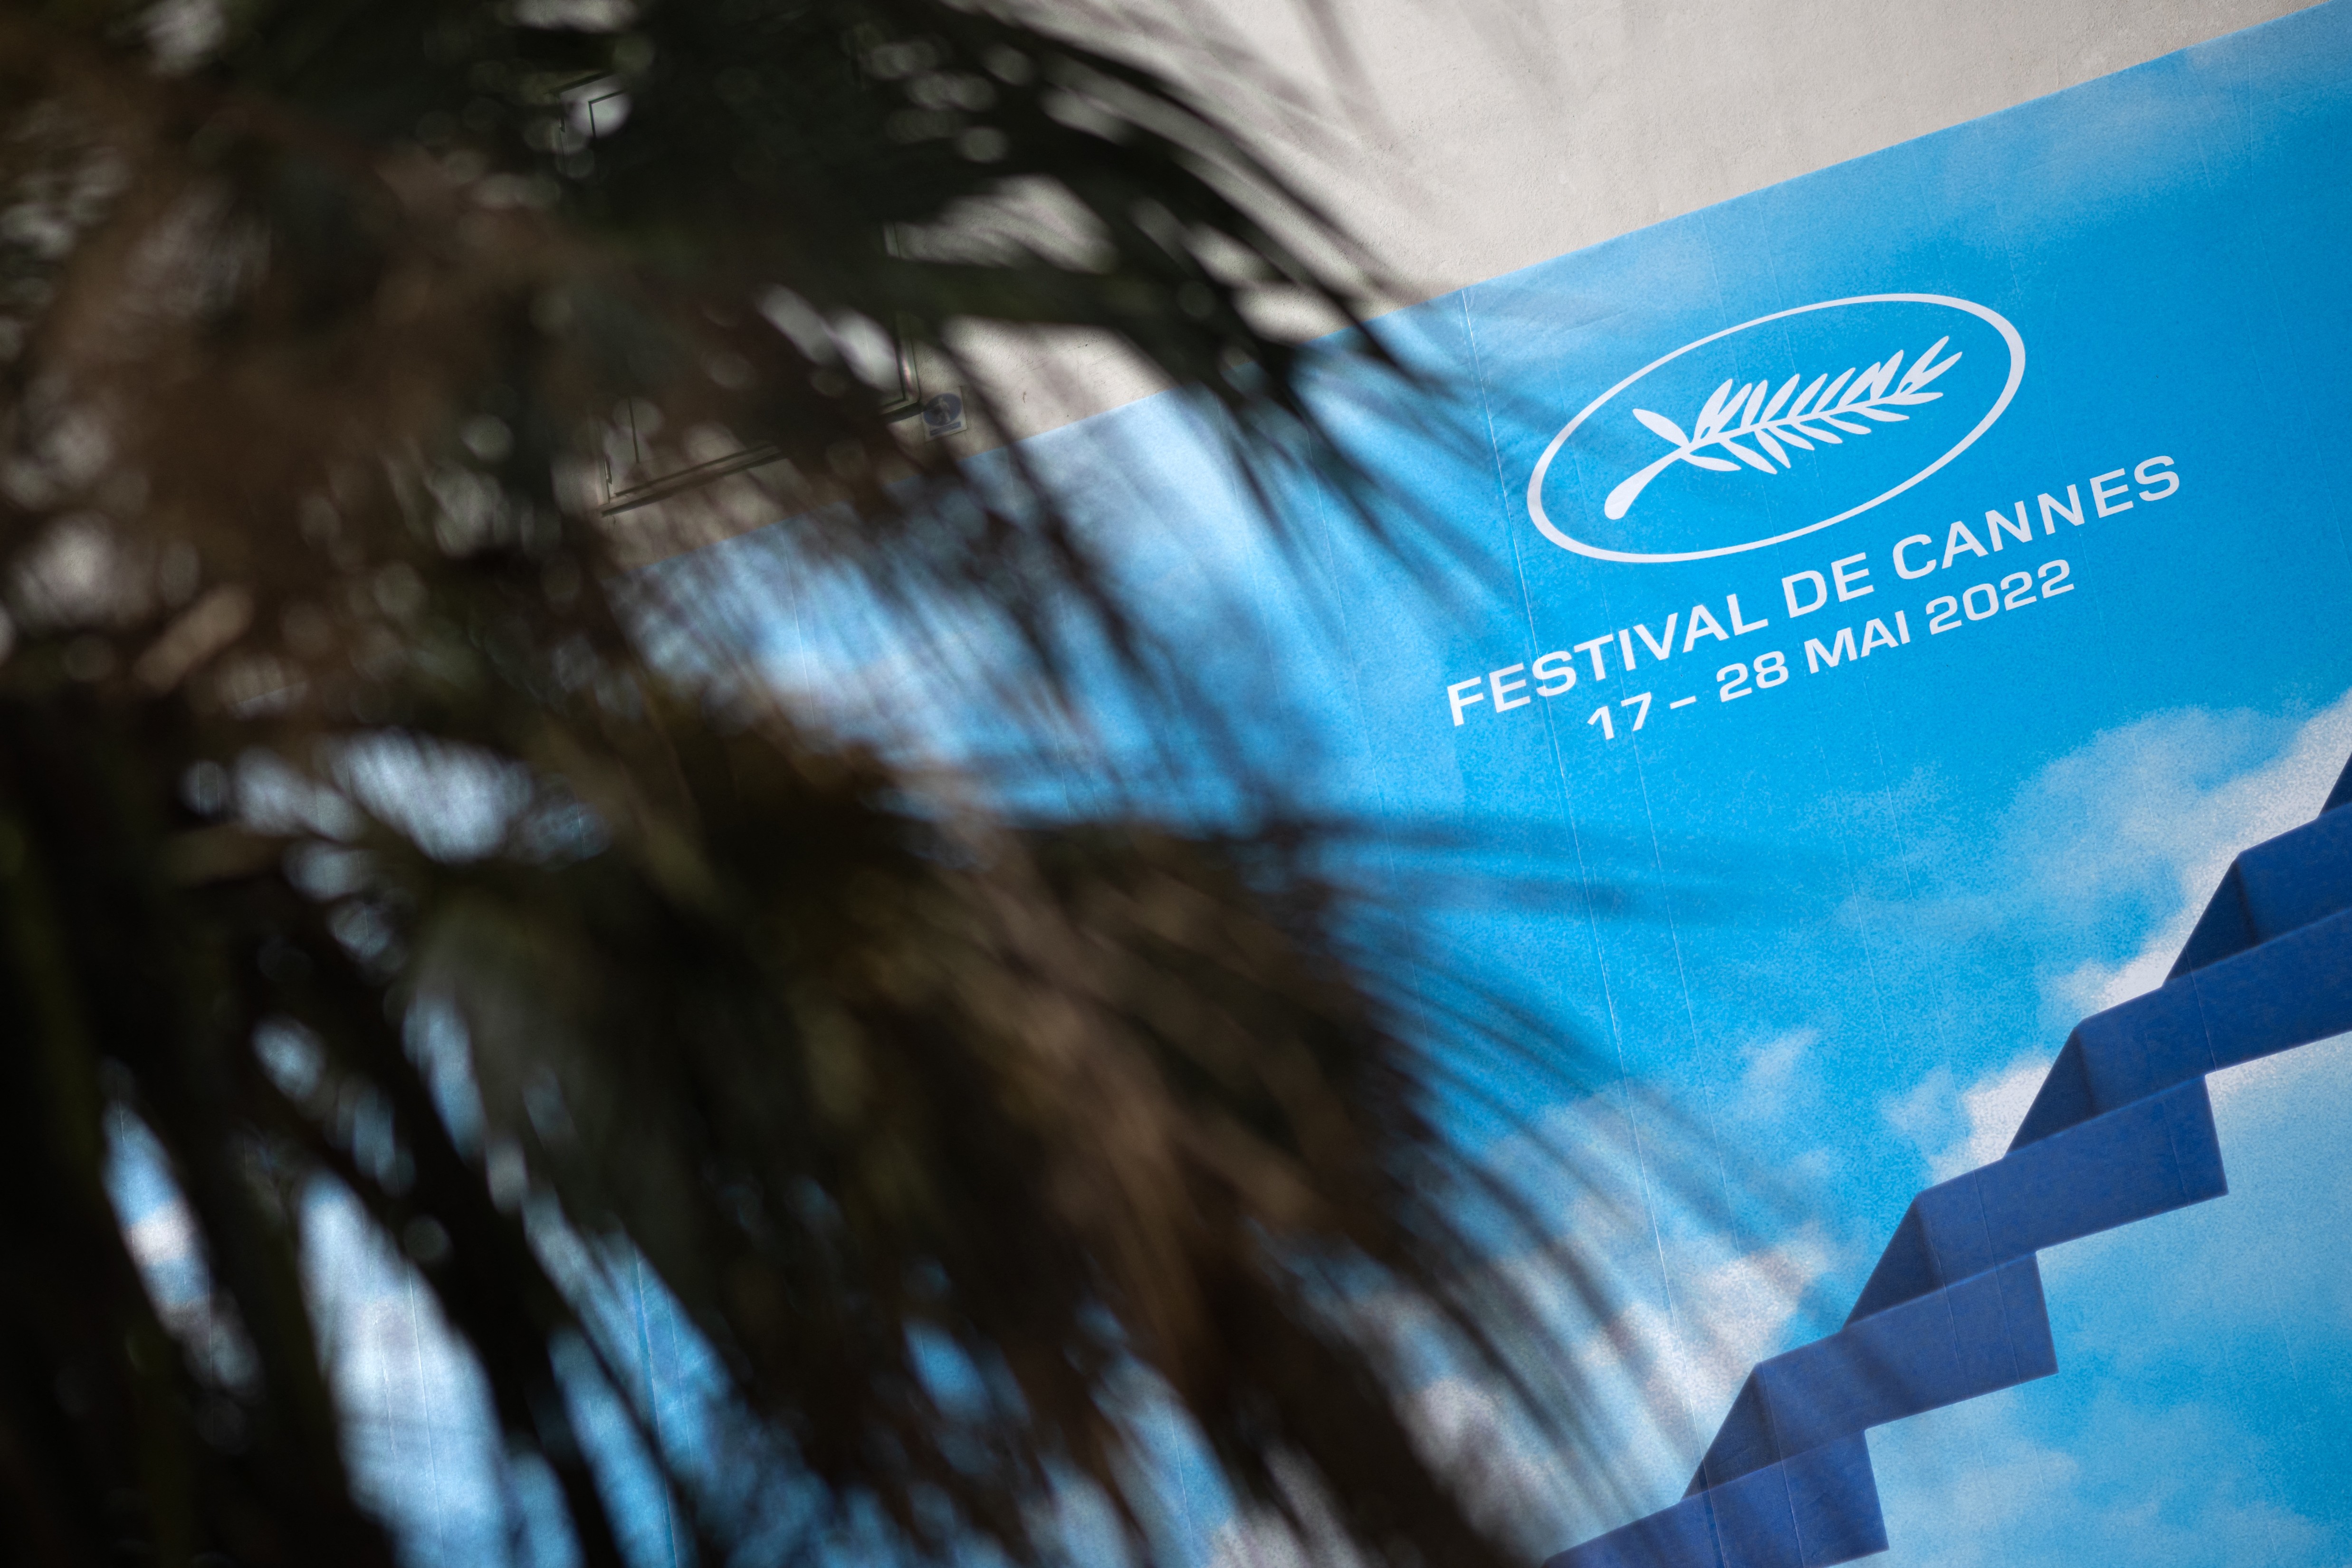 Cannes termina exibições sem favorito e com destaque para filmes de denúncia social